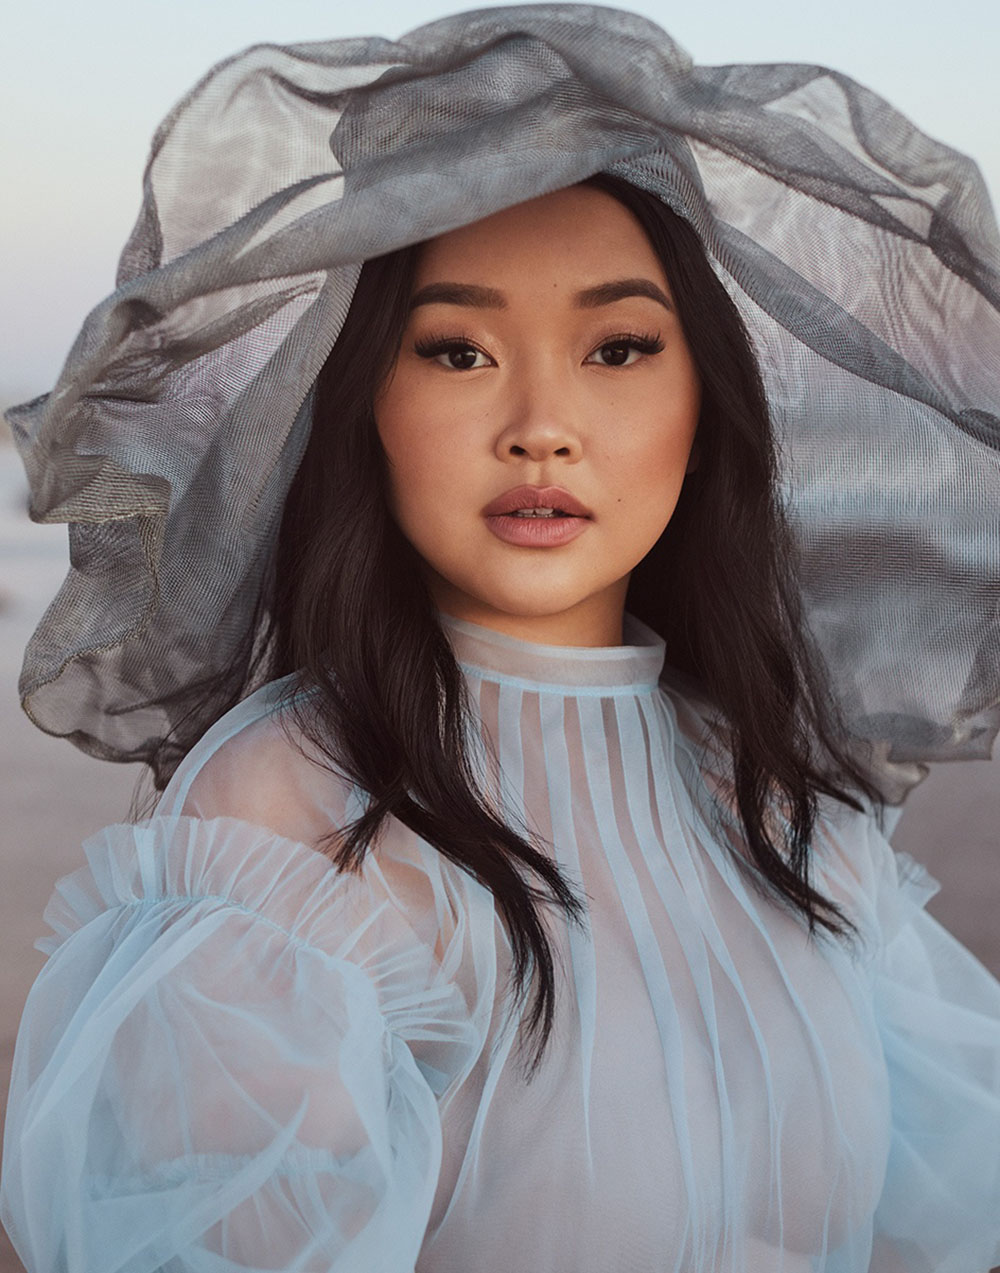 Lana Condor by Jason Kim for Vogue Singapore February 2021